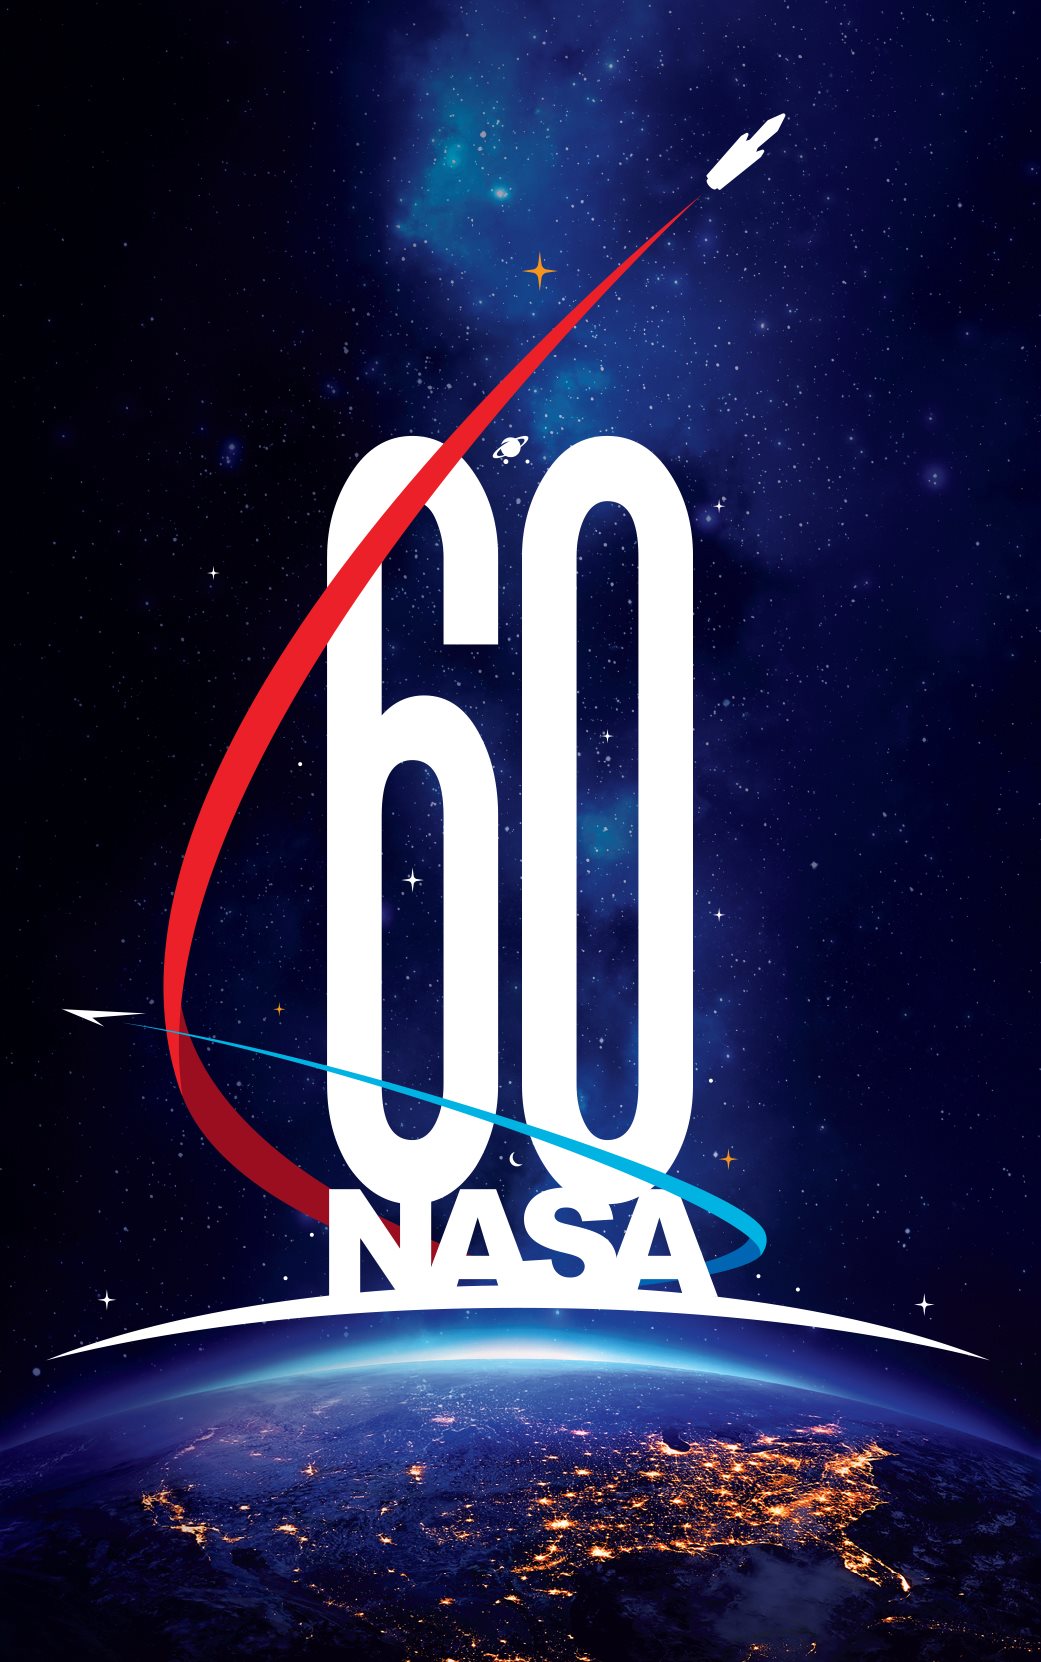 Logo de la NASA con motivo de su 60 aniversario